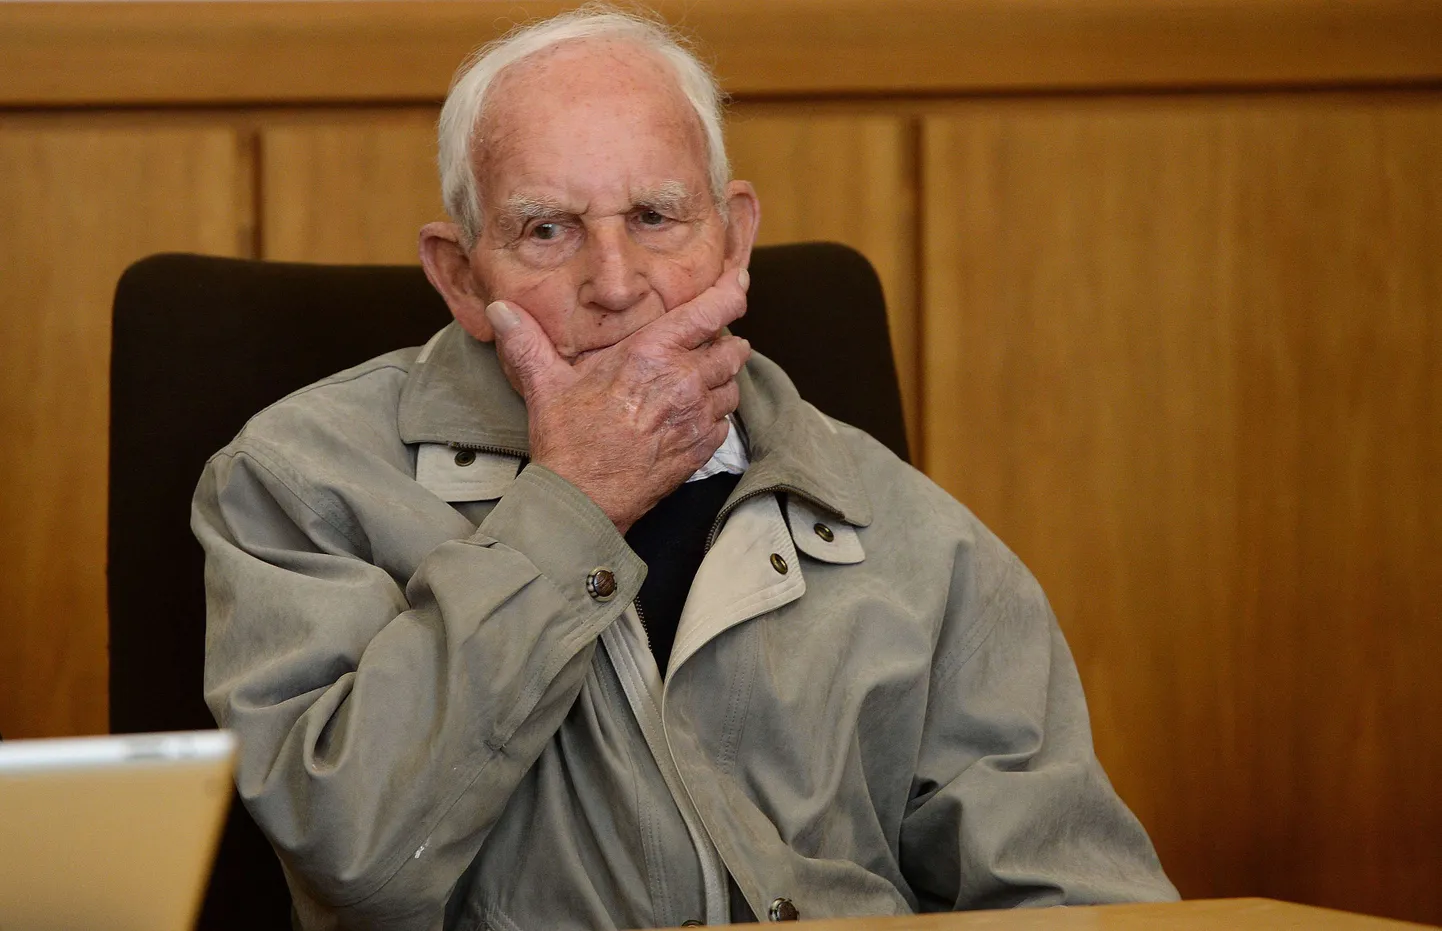 Endine SS-ohvitser Siert Bruins seisab Teise maailmasõja aegsete kuritegude eest kohtu all juba mitmendat korda.